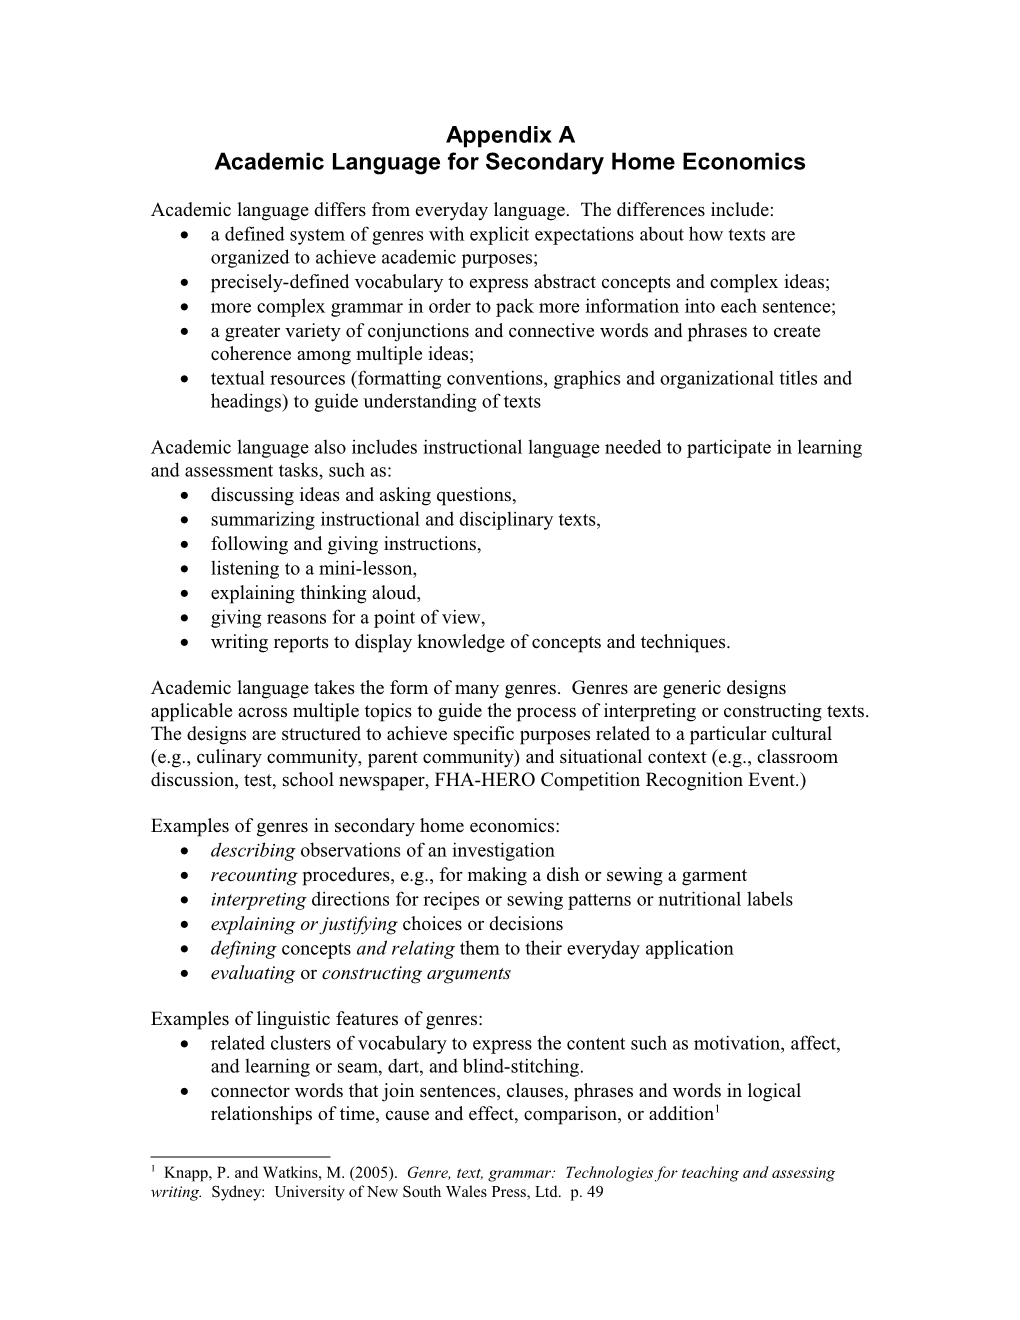 Academic Language for Secondary Home Economics